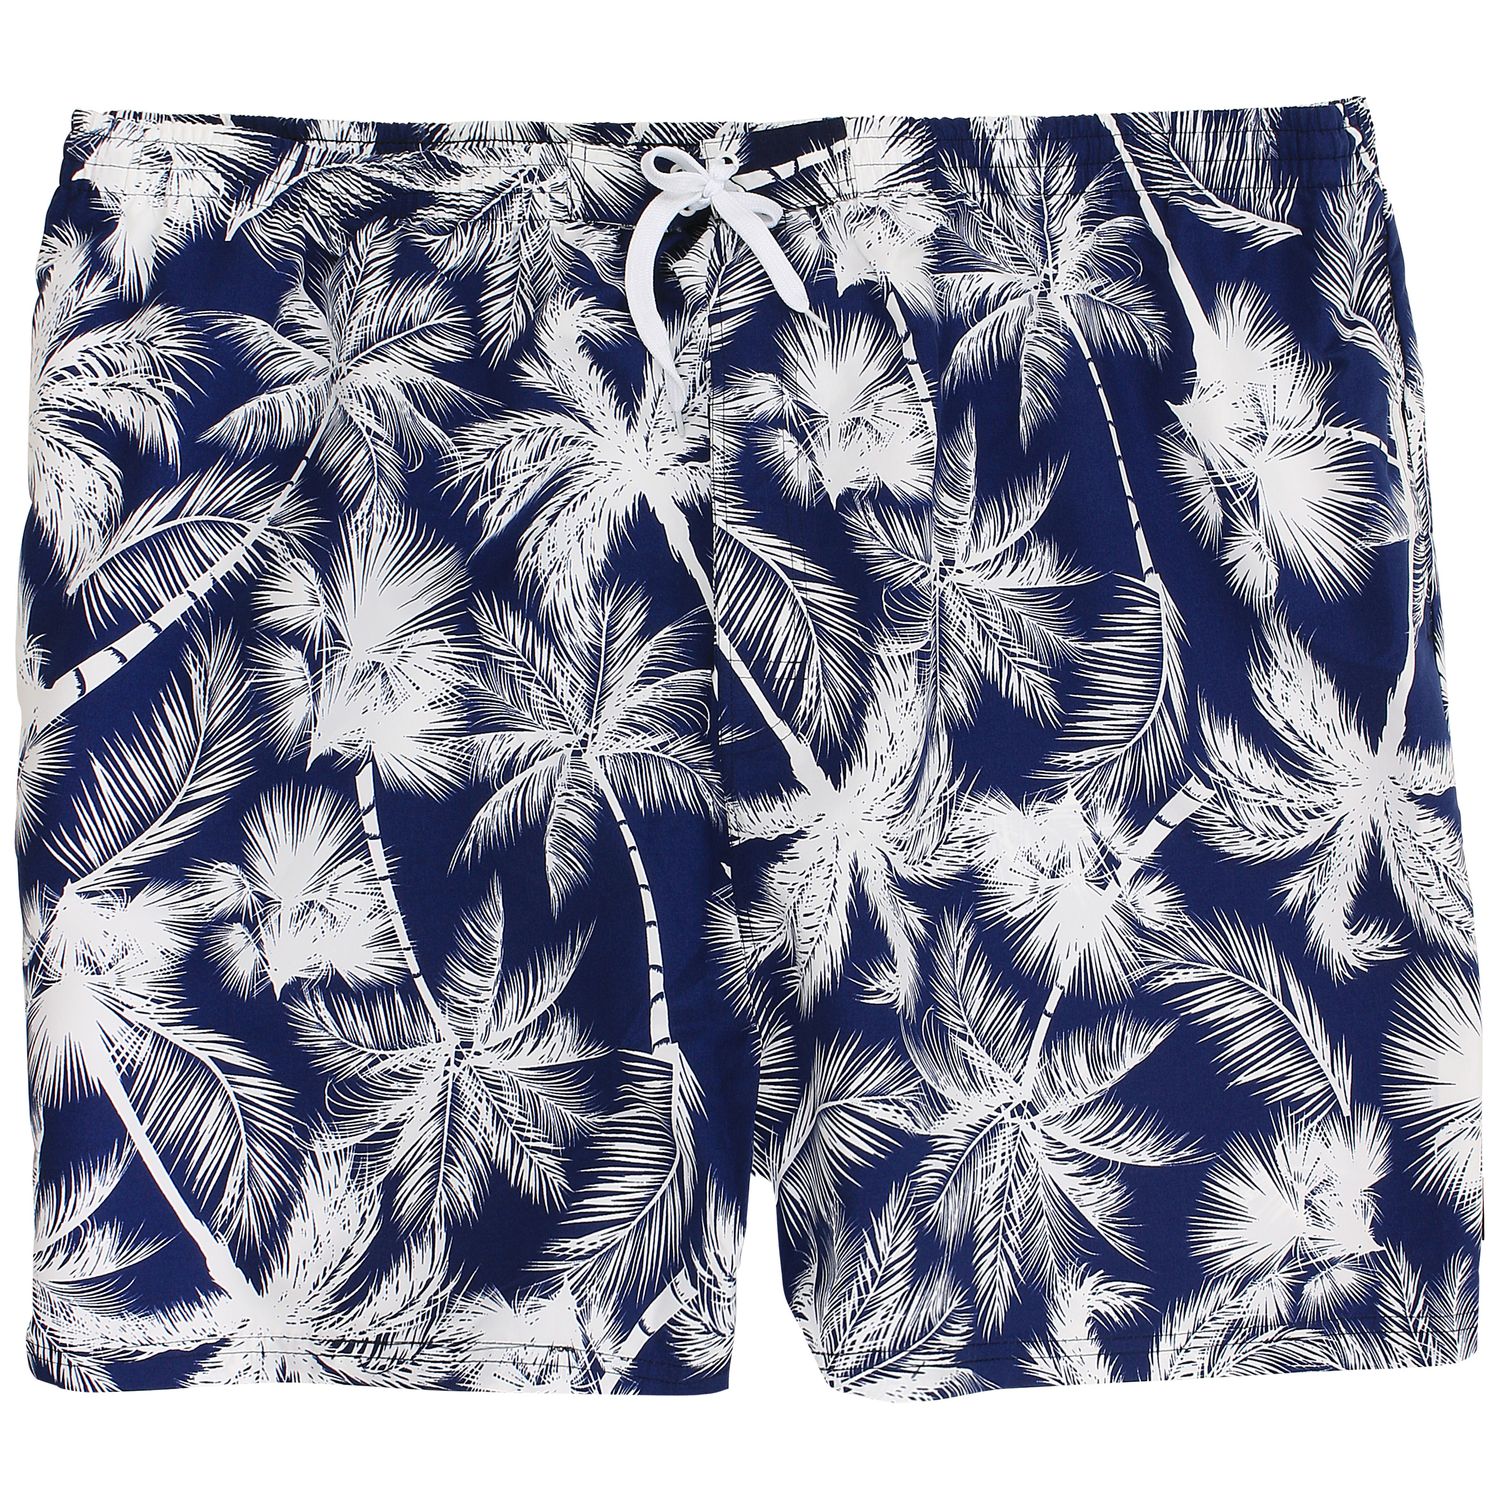 Badeshort Badehose Schwimmhose von eleMar in großen Größen bis 9XL für Herren in blau-weiß mit Palmenprint